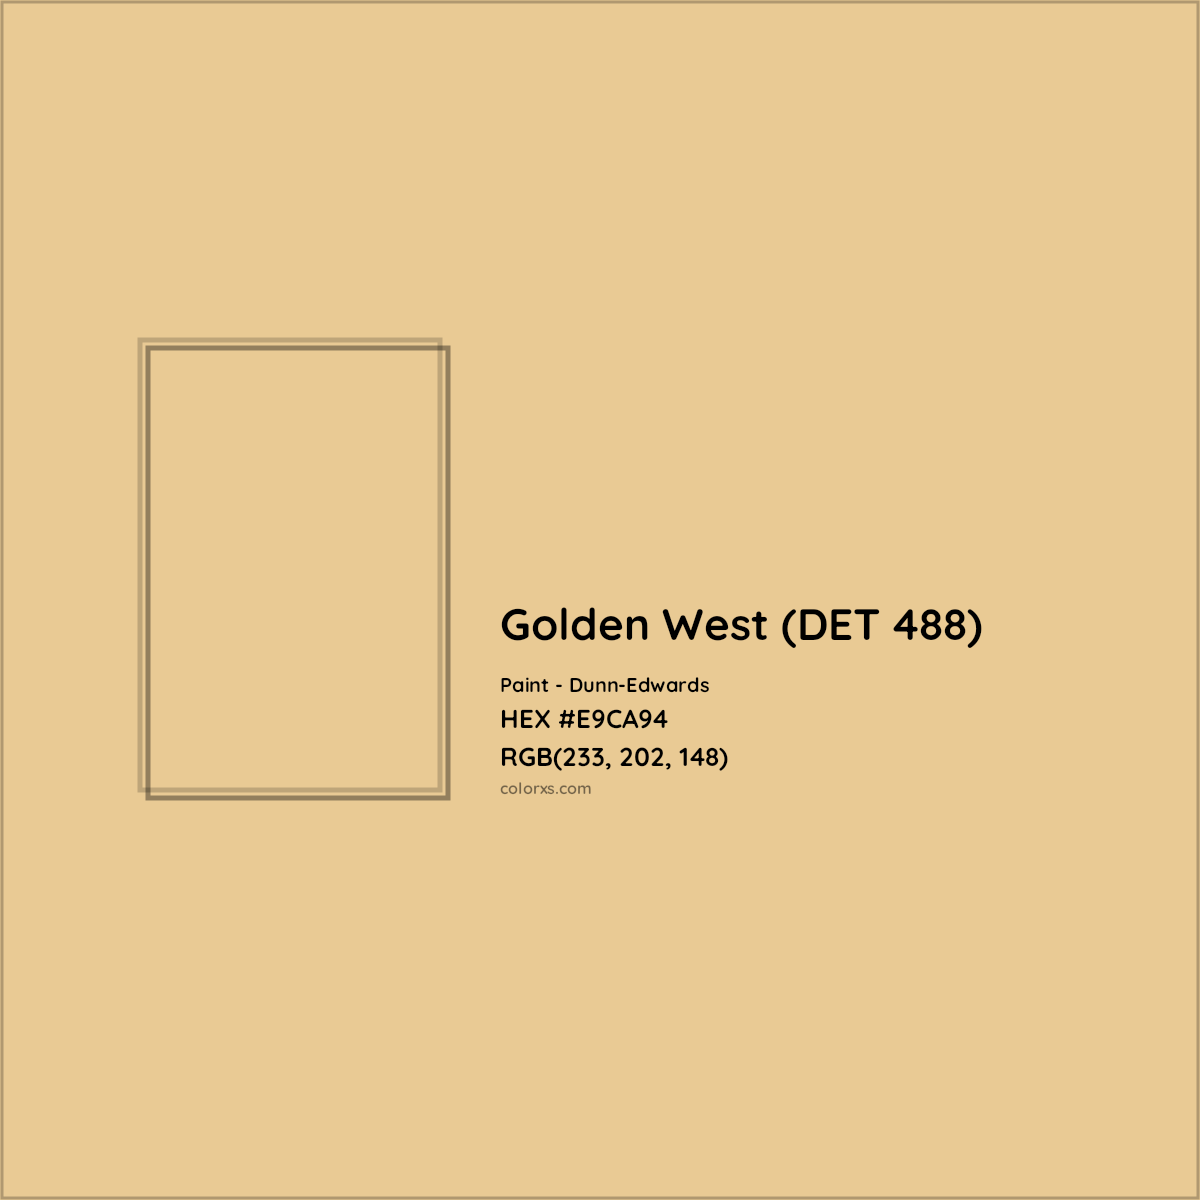 HEX #E9CA94 Golden West (DET 488) Paint Dunn-Edwards - Color Code